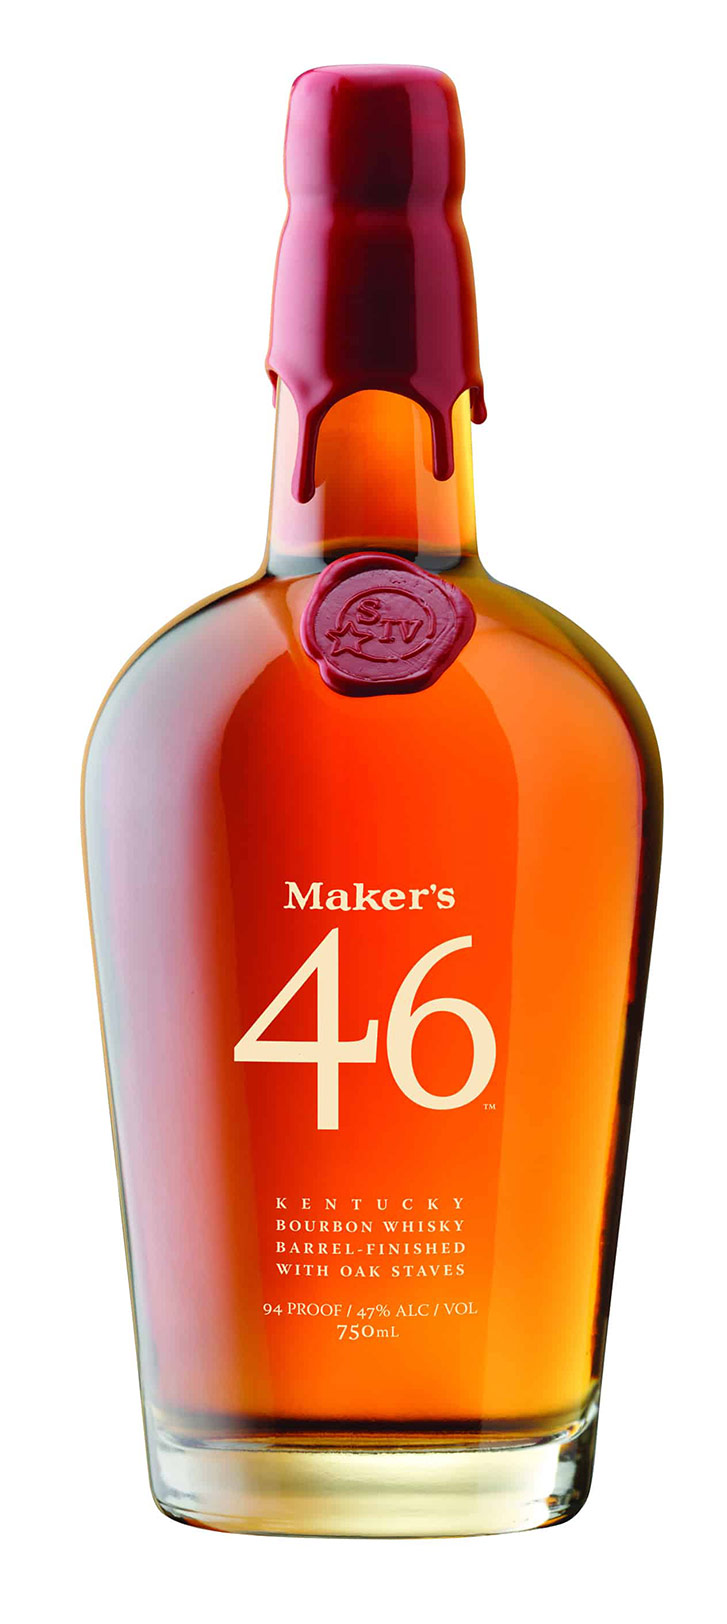 Maker's Mark 46 bourbon